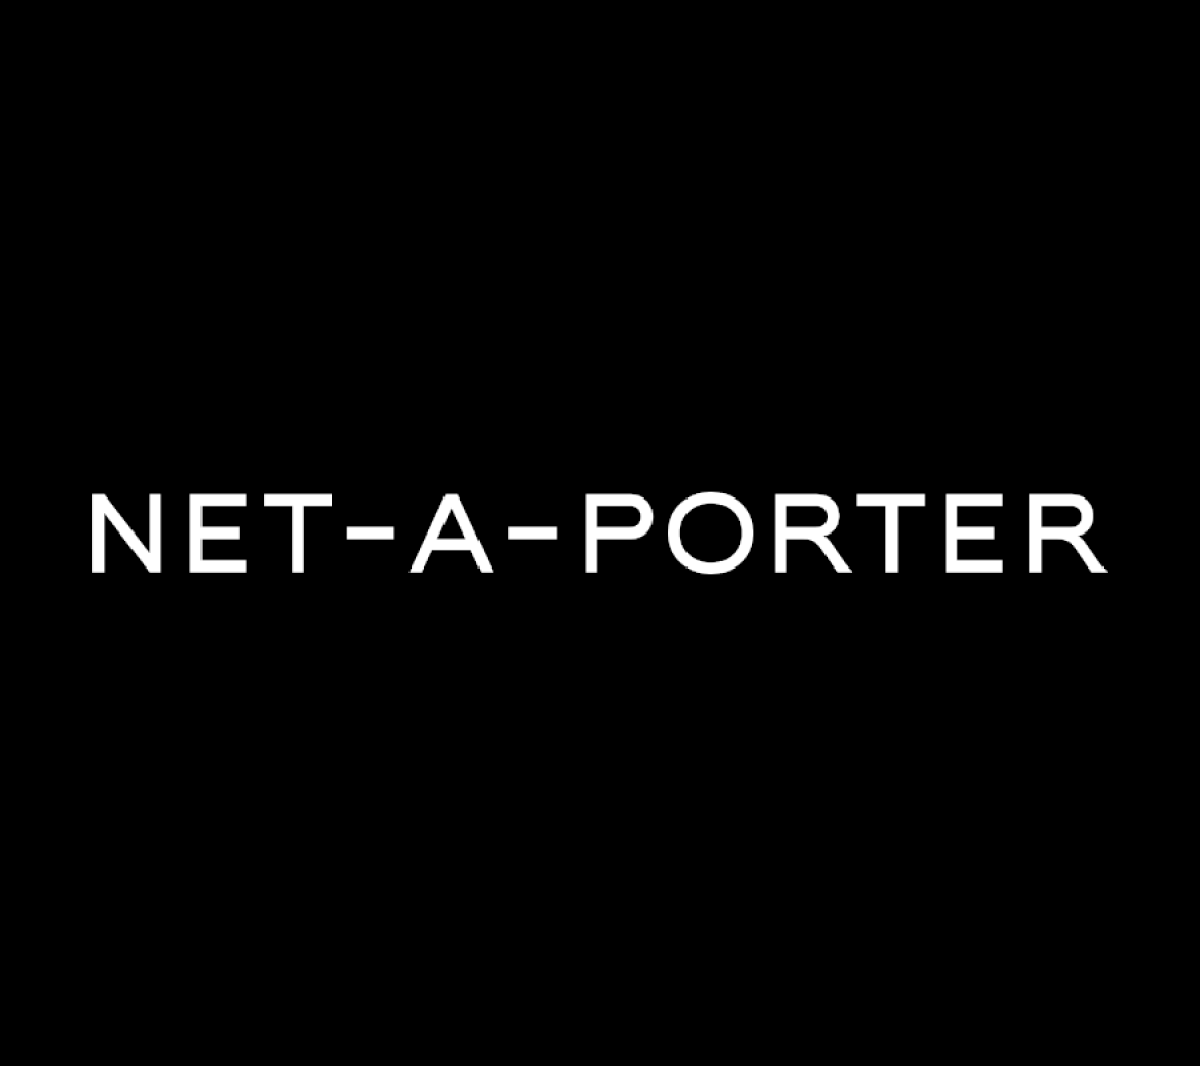 net-a-porter-logo-case-study - magellan